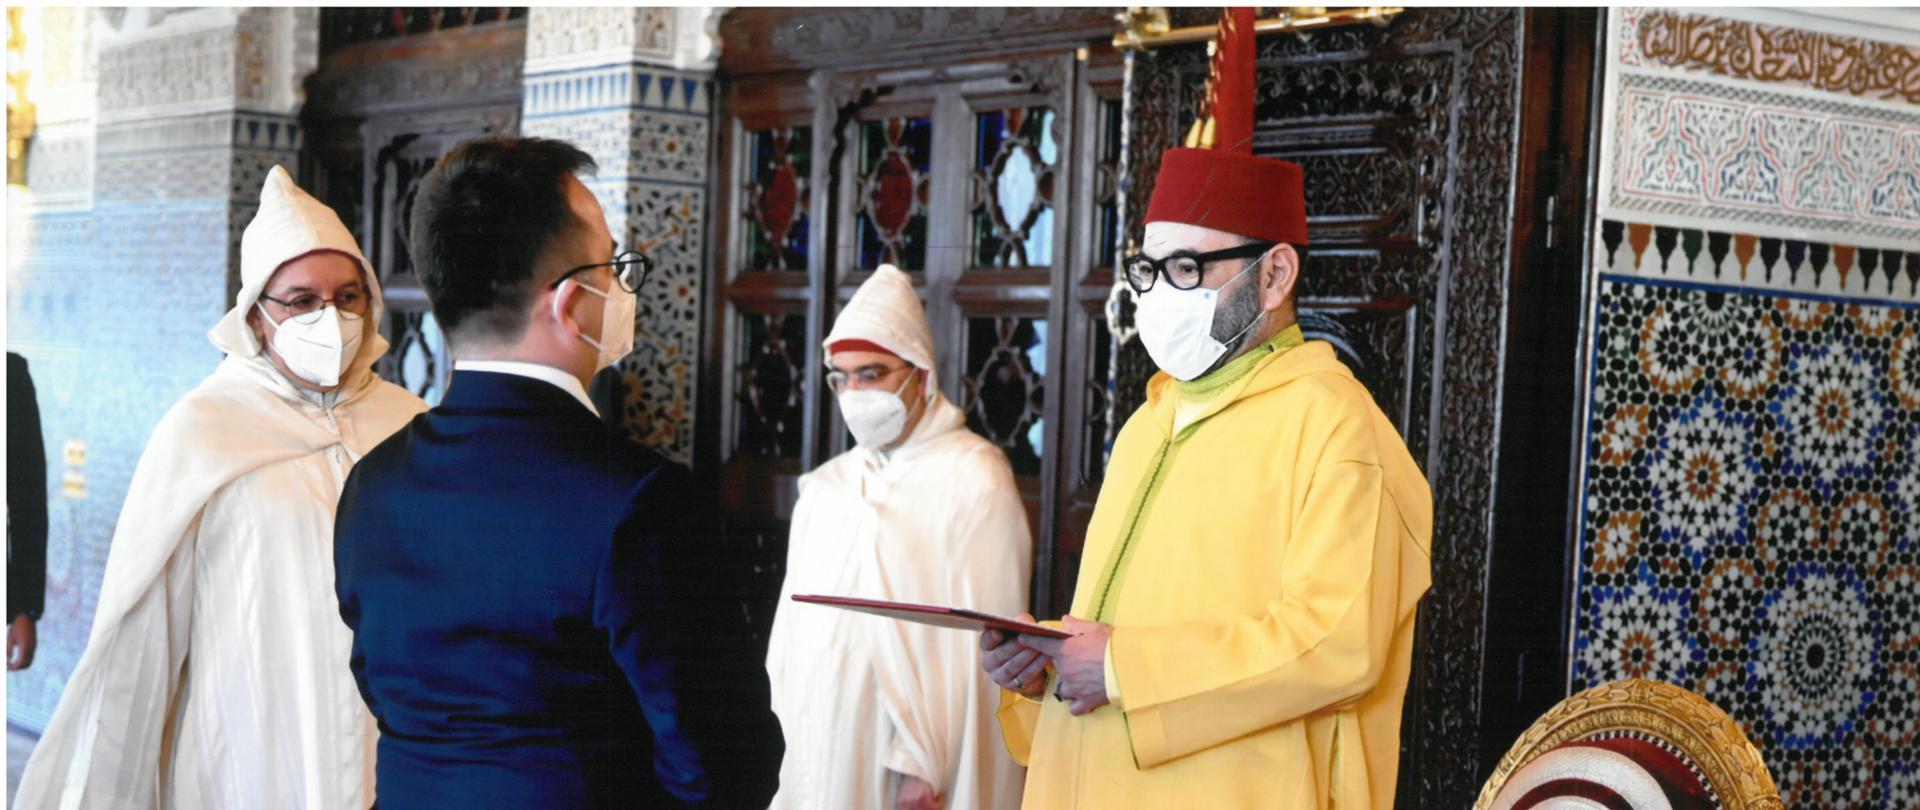 Ceremonia składania listów uwierzytelniających u Króla Maroka Mohammeda VI